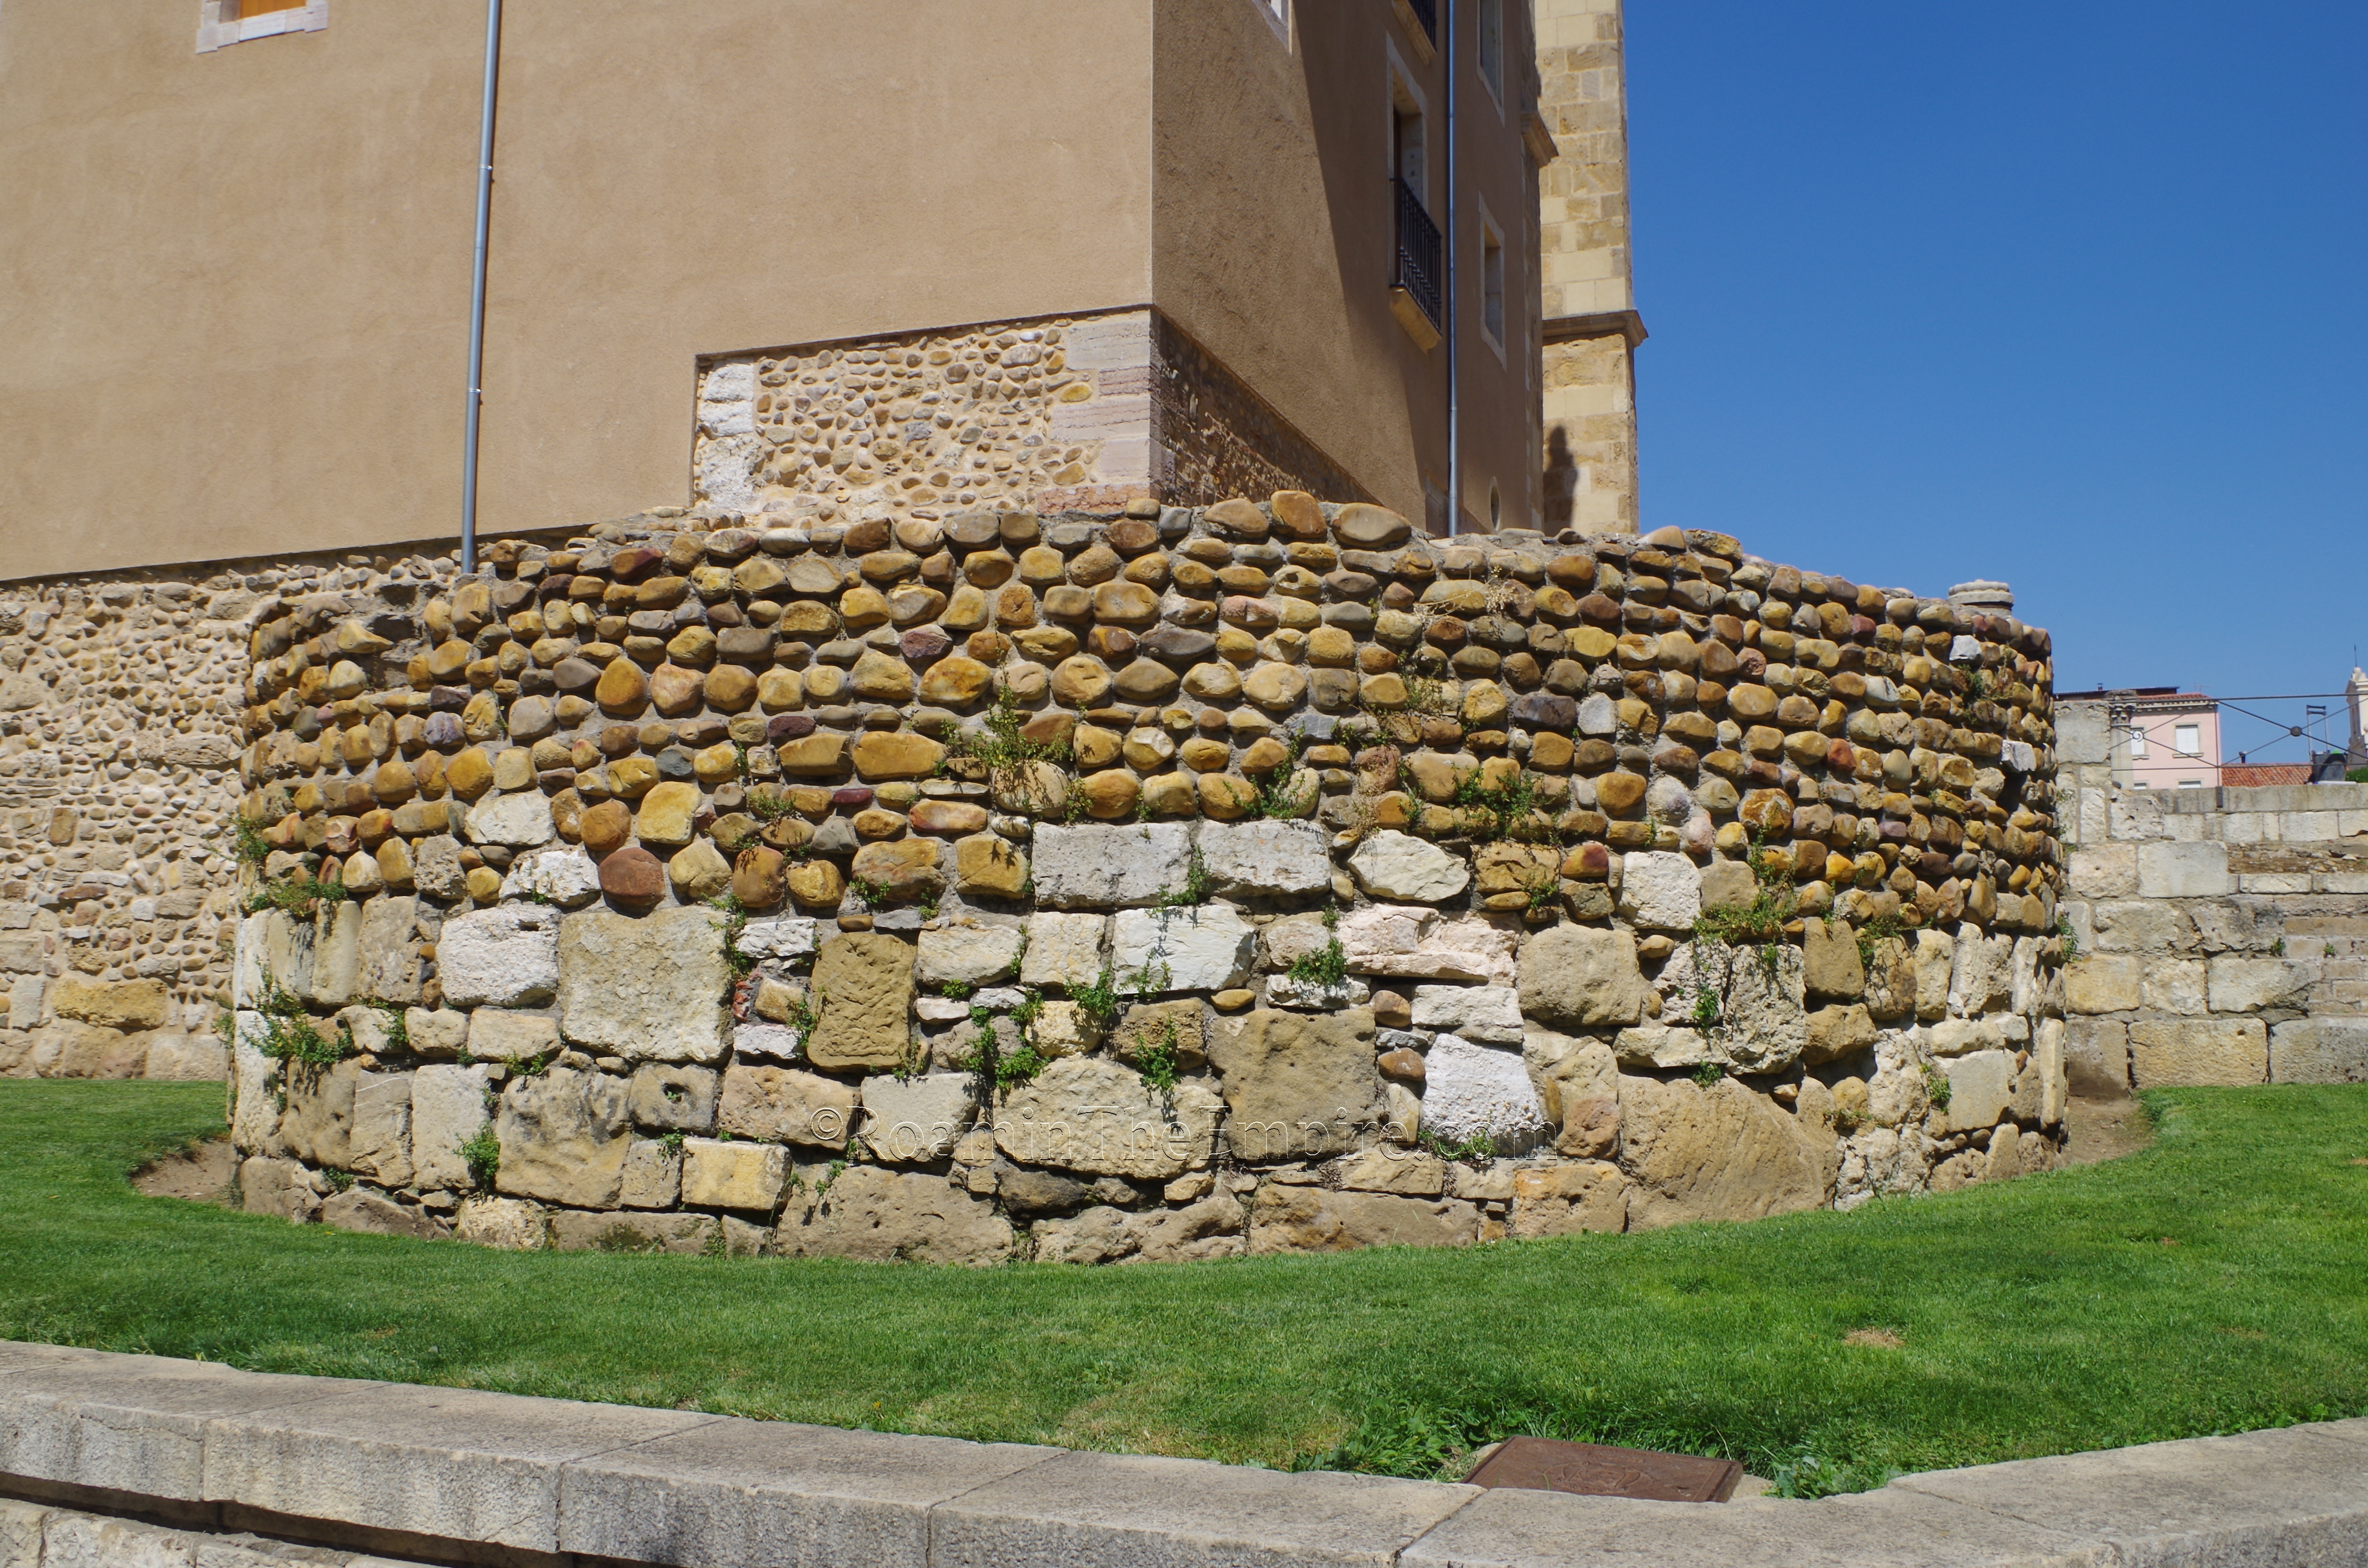 Remains of the tower at Plaza San Isidoro.